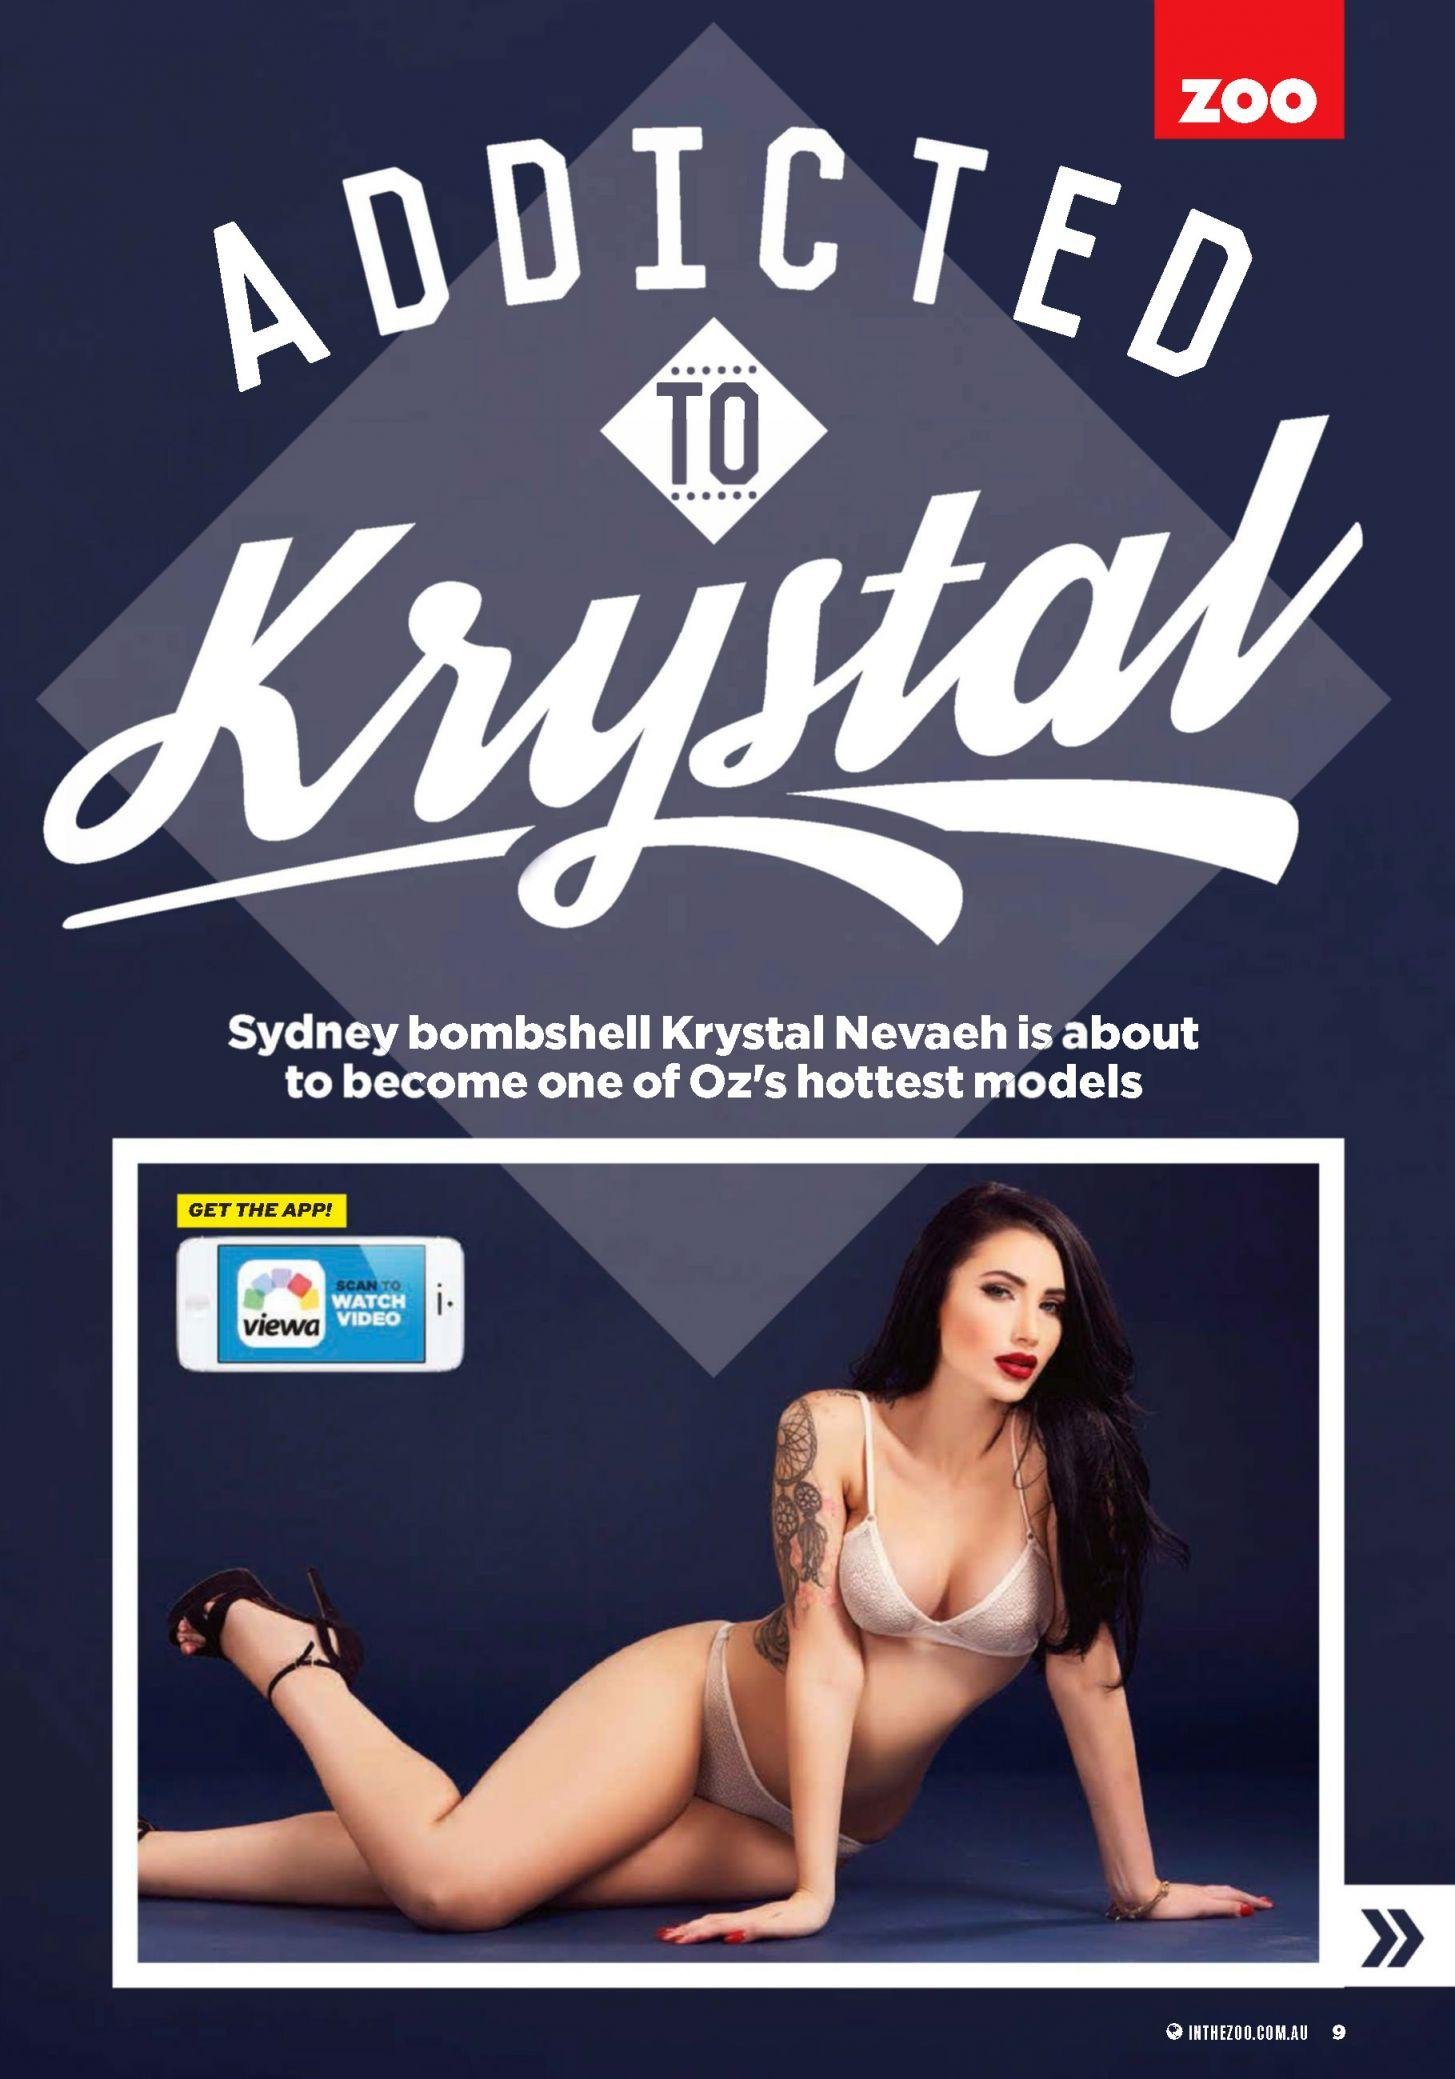 Krystal Nevaeh - ZOO 31 August 2015 Australia